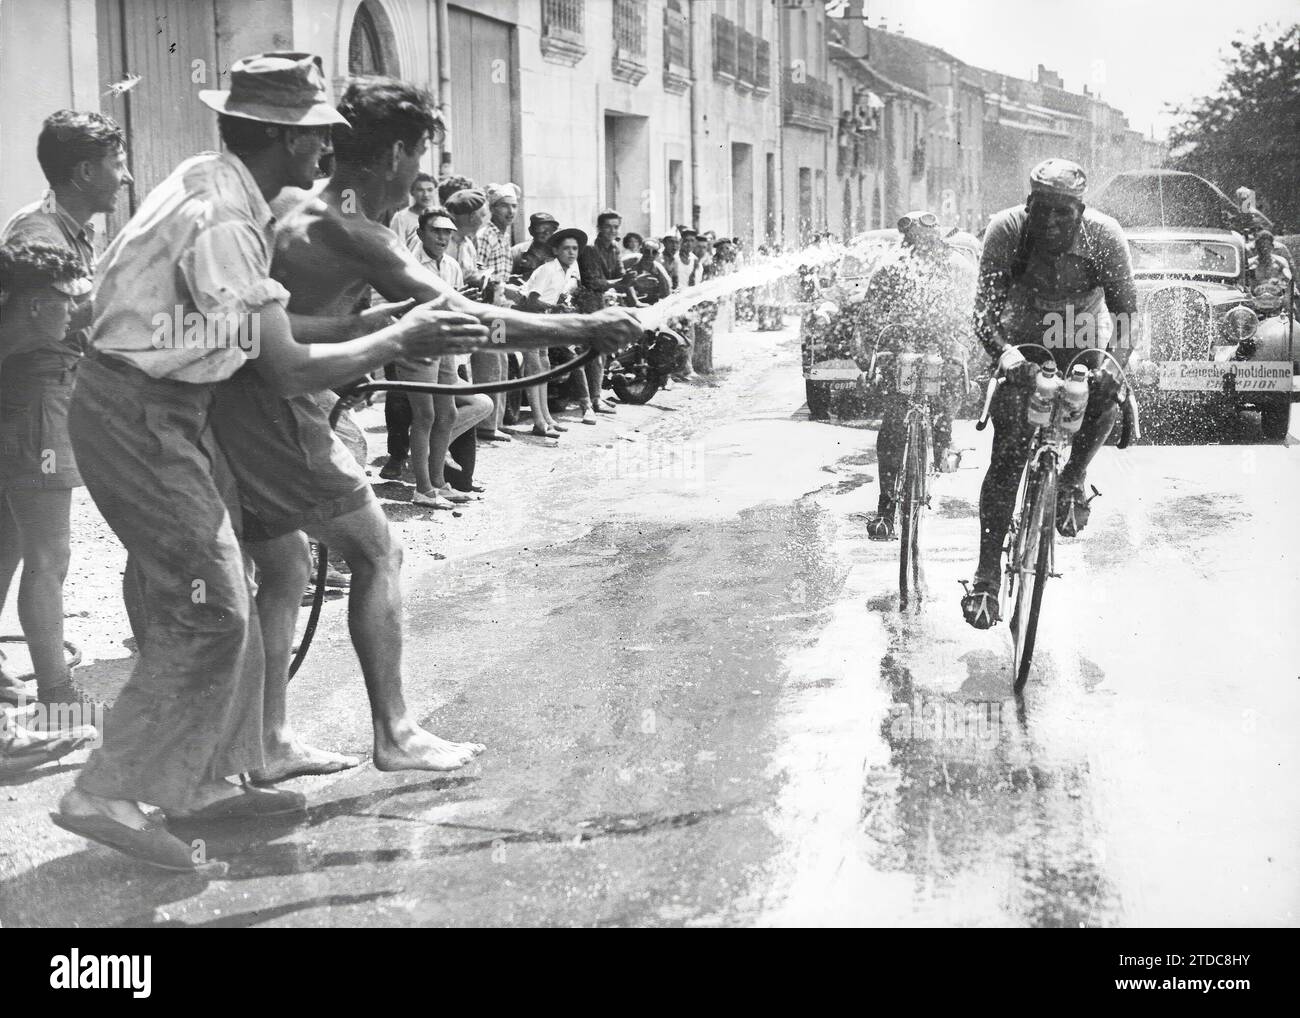 Frankreich, Juli 1950. Tour de France. Die Bühne zwischen Perpignan und Nimes wurde mitten in gewaltiger Hitze geführt. Im Bild werden Zaaf und Molines von mehreren Zuschauern aufgefrischt. Quelle: Album/Archivo ABC Stockfoto